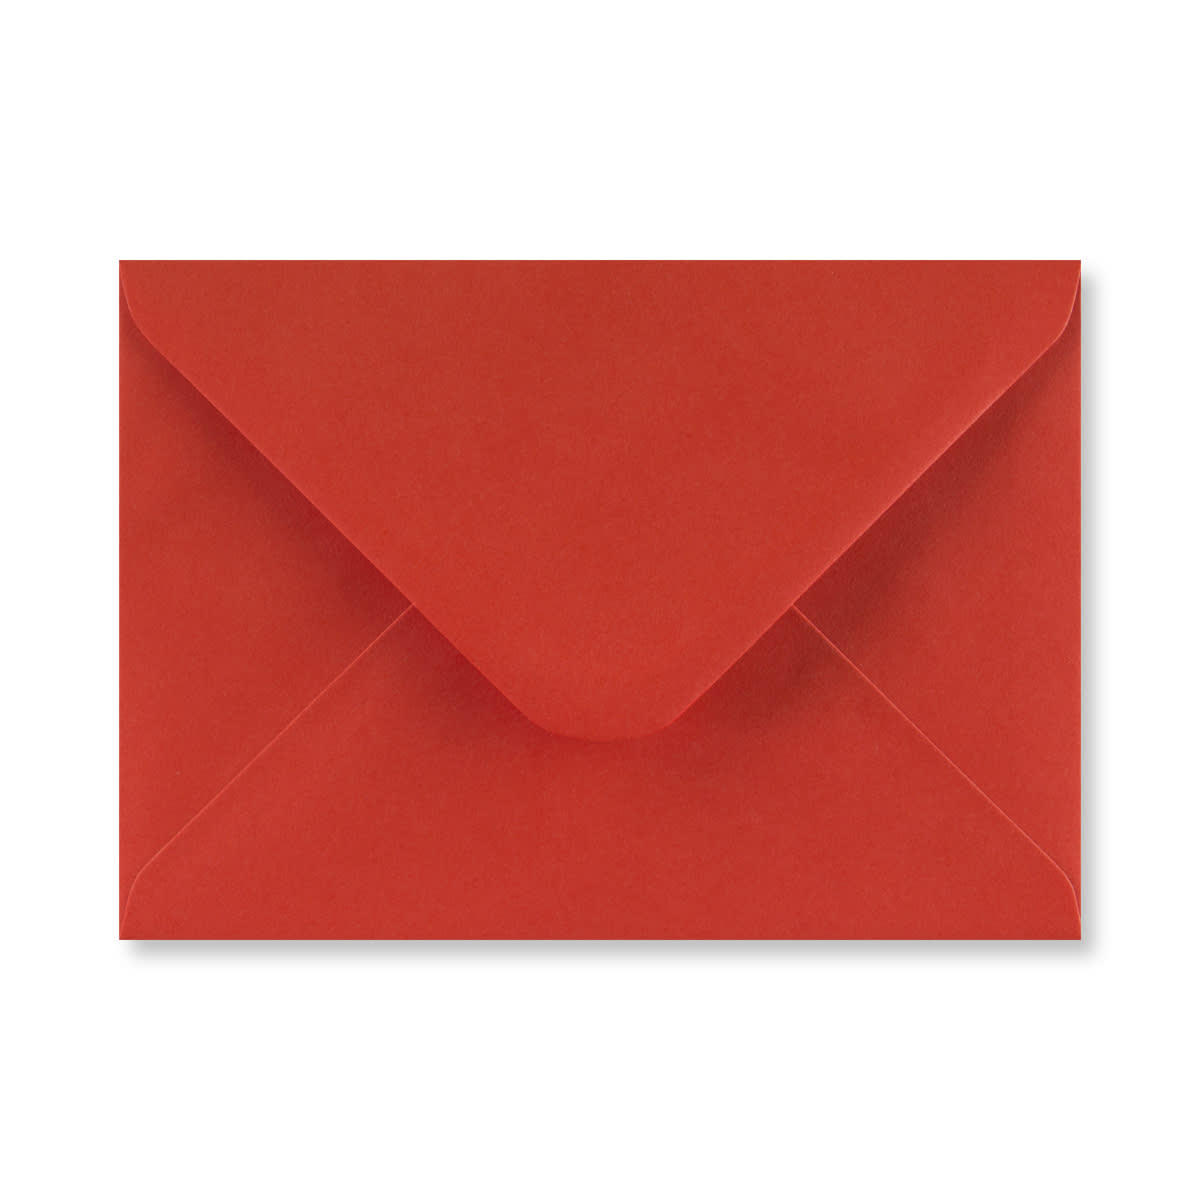 5.24 x 7.24 " Poppy Red Envelopes 68lb